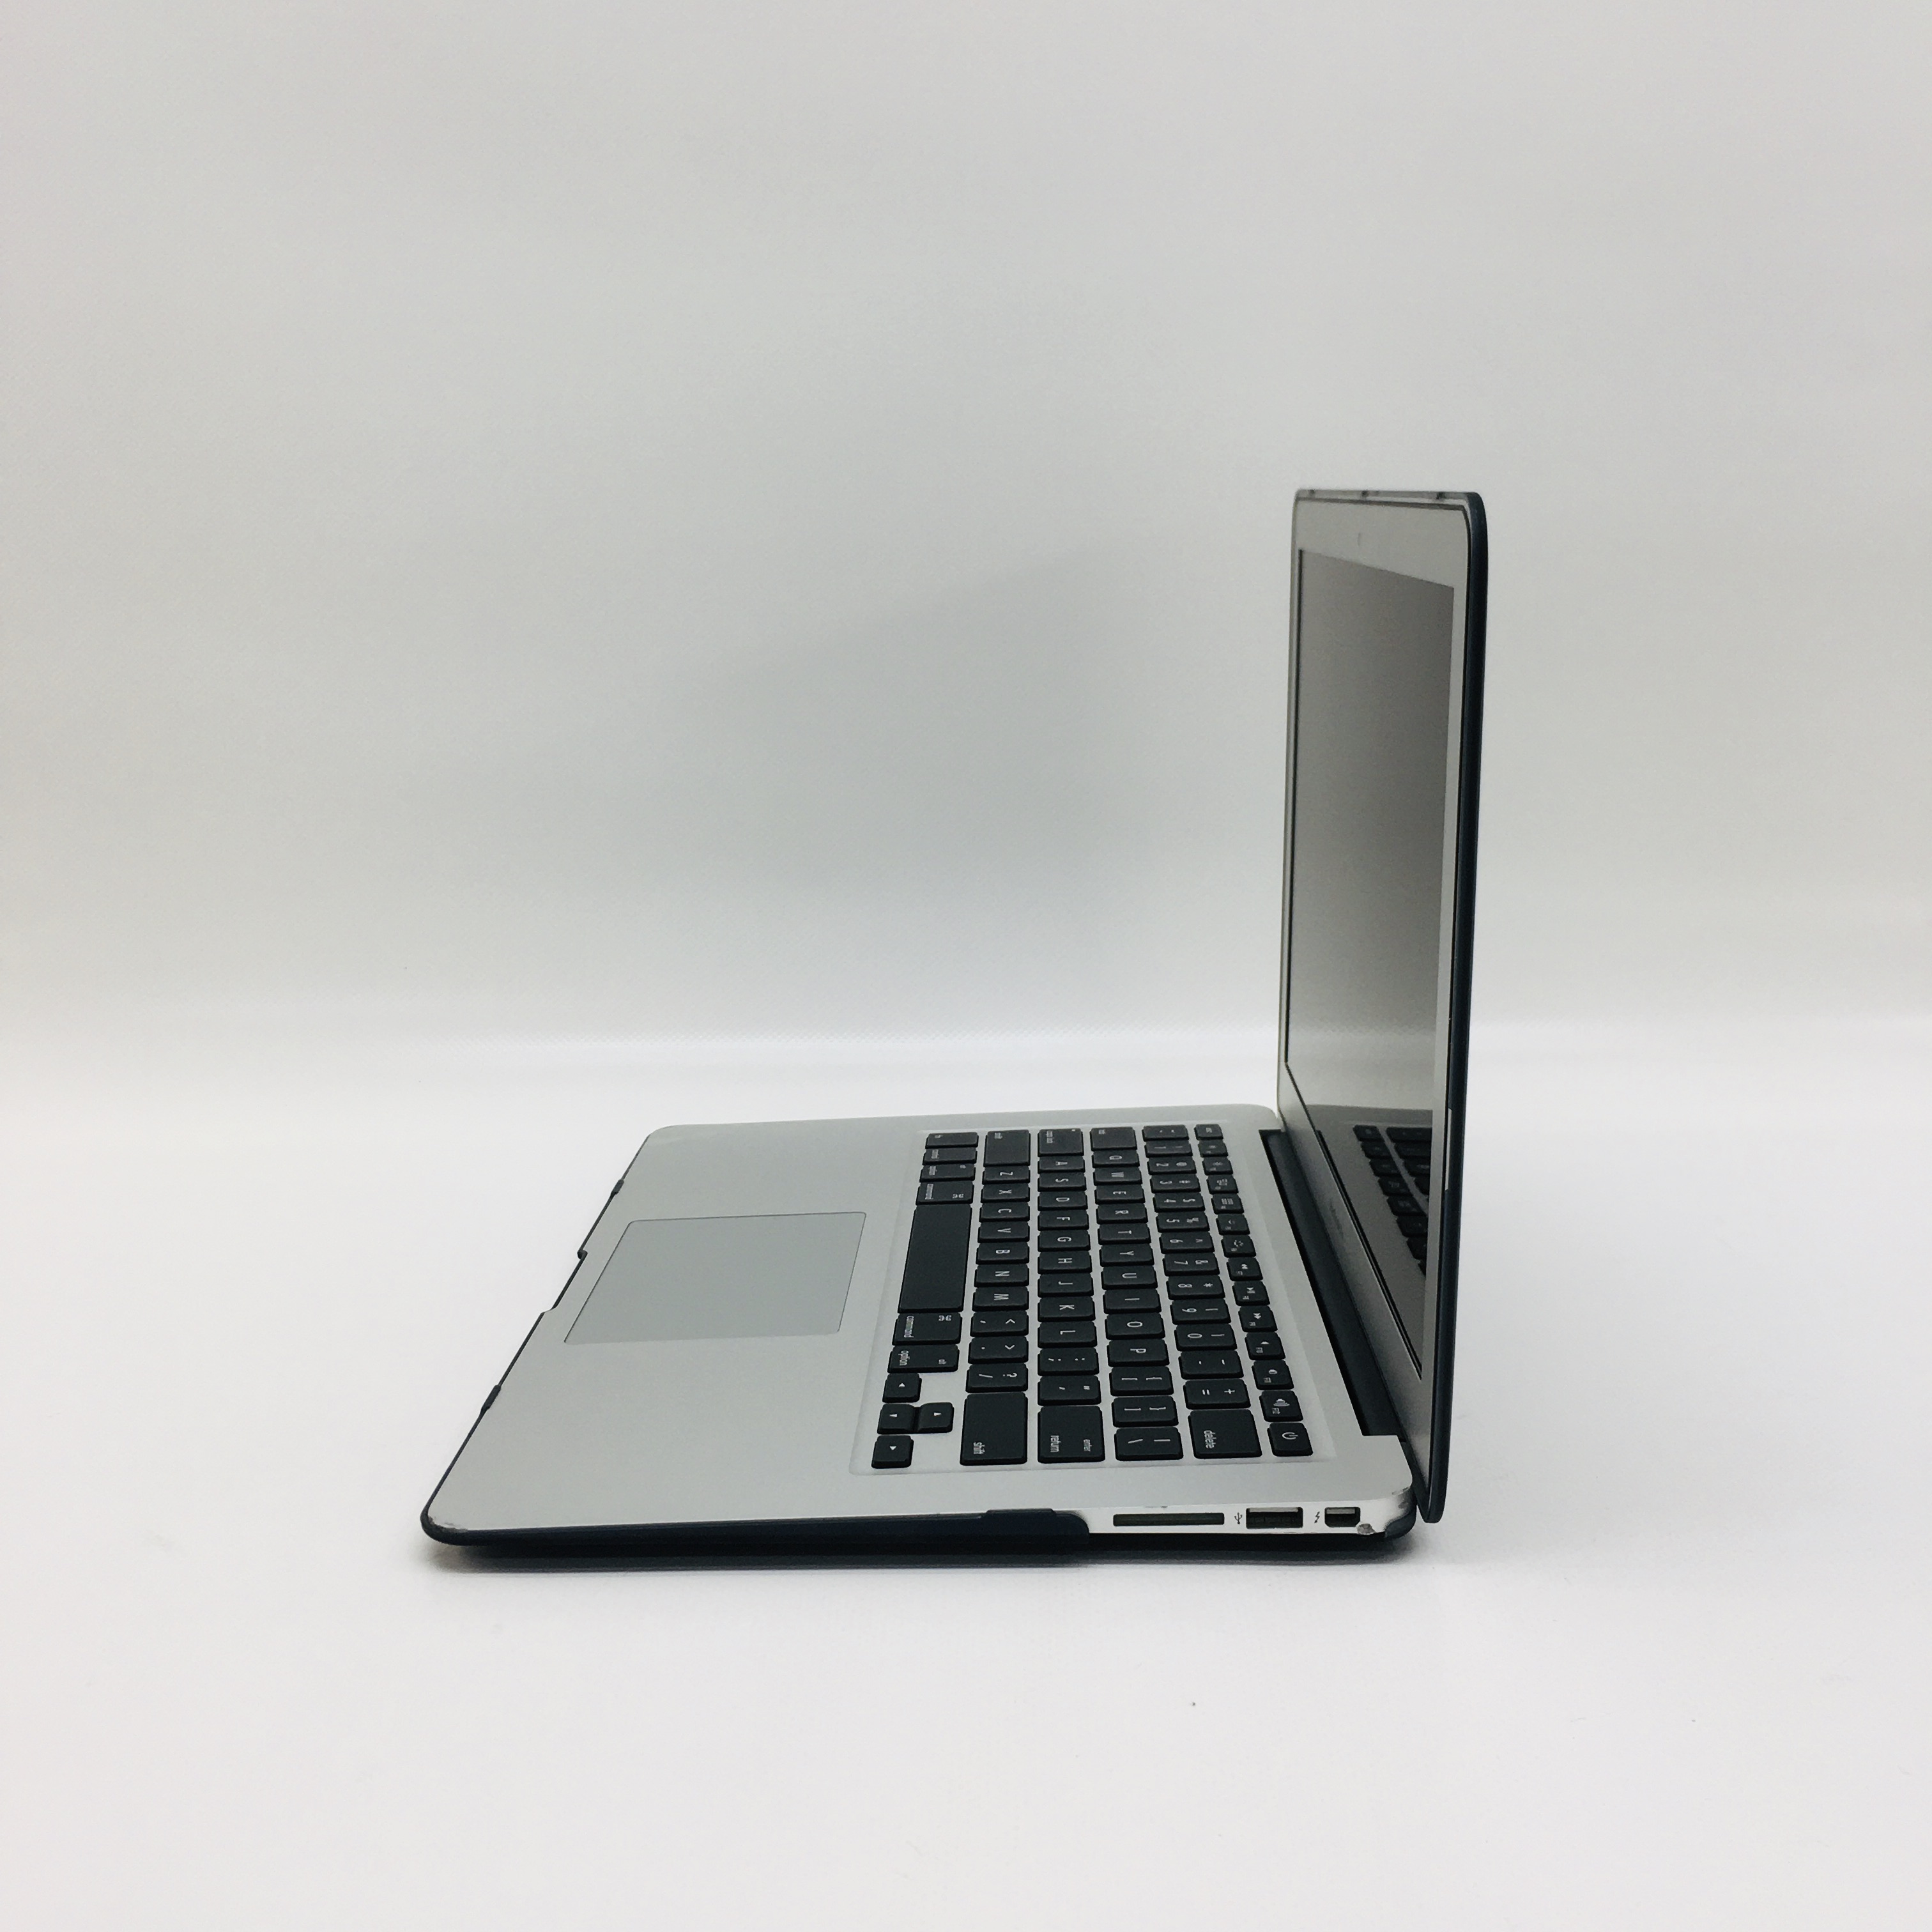 MacBook Air 13" Mid 2017 (Intel Core i5 1.8 GHz 8 GB RAM 128 GB SSD), Intel Core i5 1.8 GHz, 8 GB RAM, 128 GB SSD, image 2